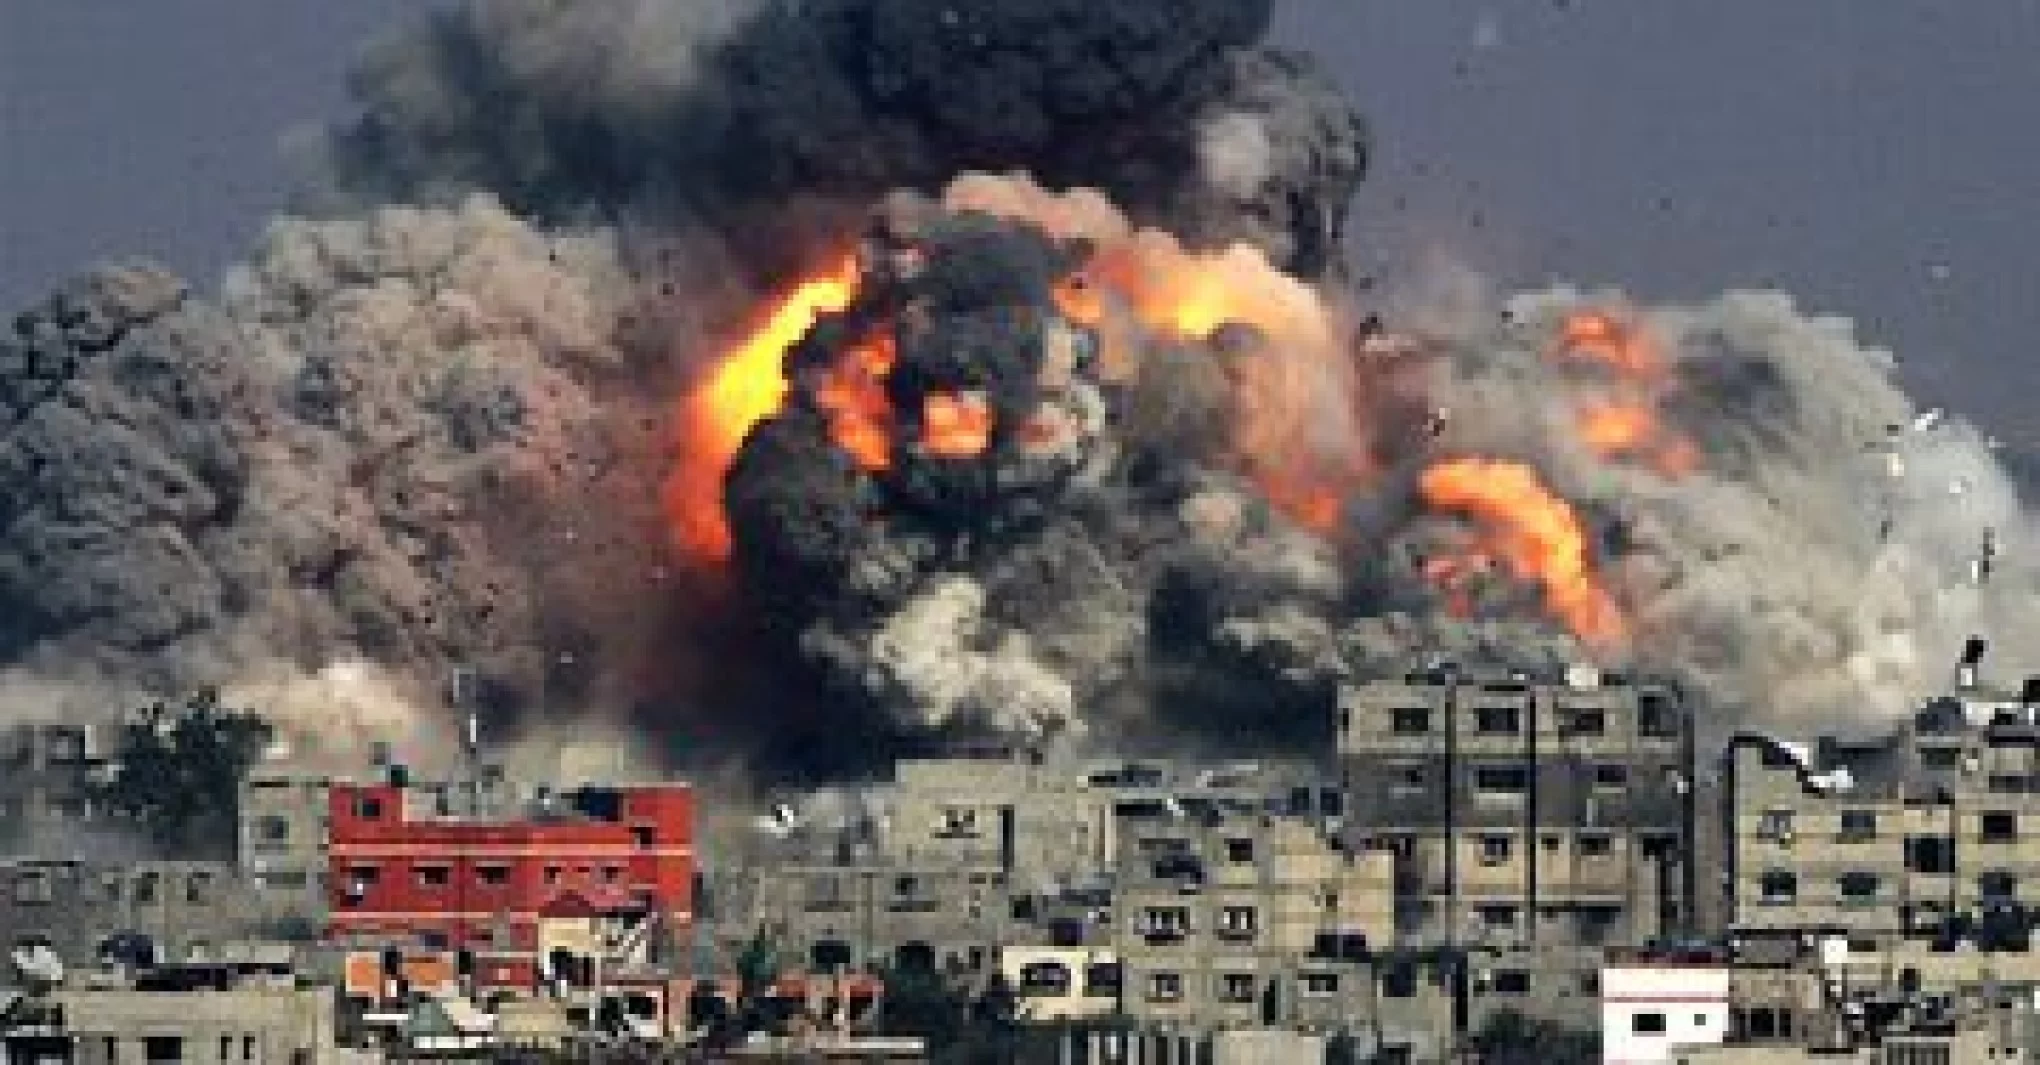 ONU preocupada com cerco à Faixa de Gaza e impedimento de ajuda humanitária O secretário-geral da ONU, António Guterres, expressou sua